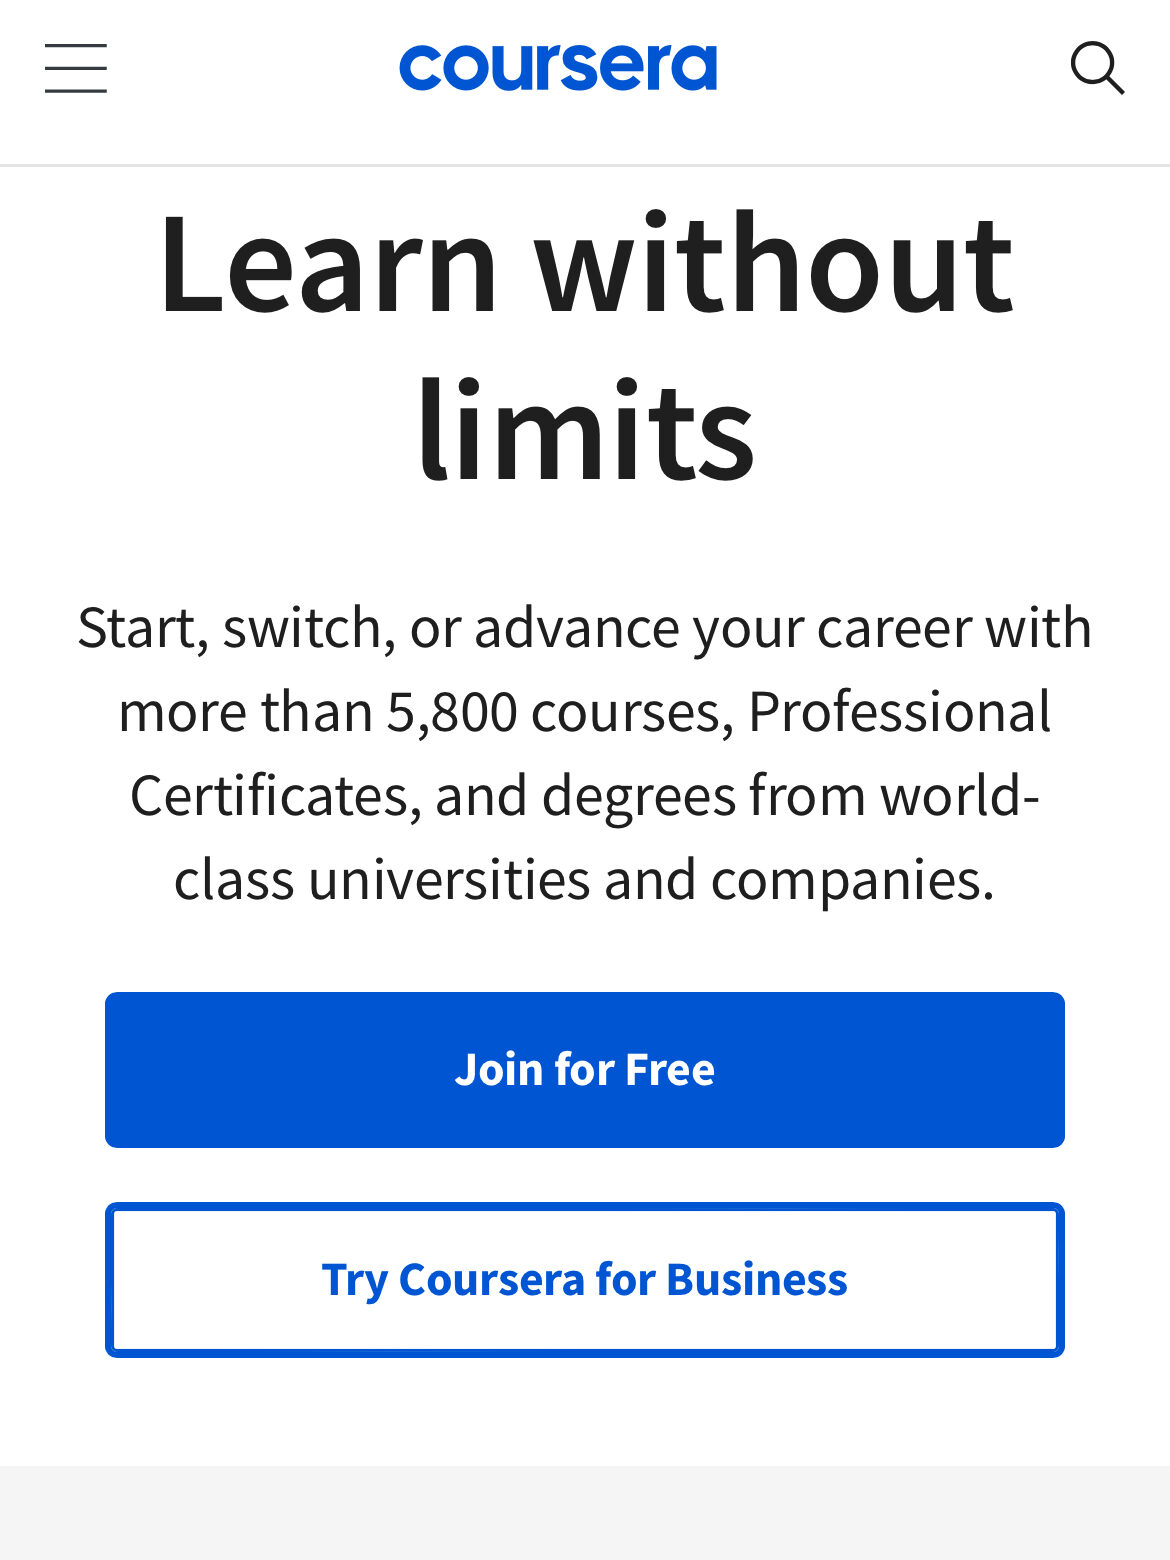 A screenshot of the Coursera website.